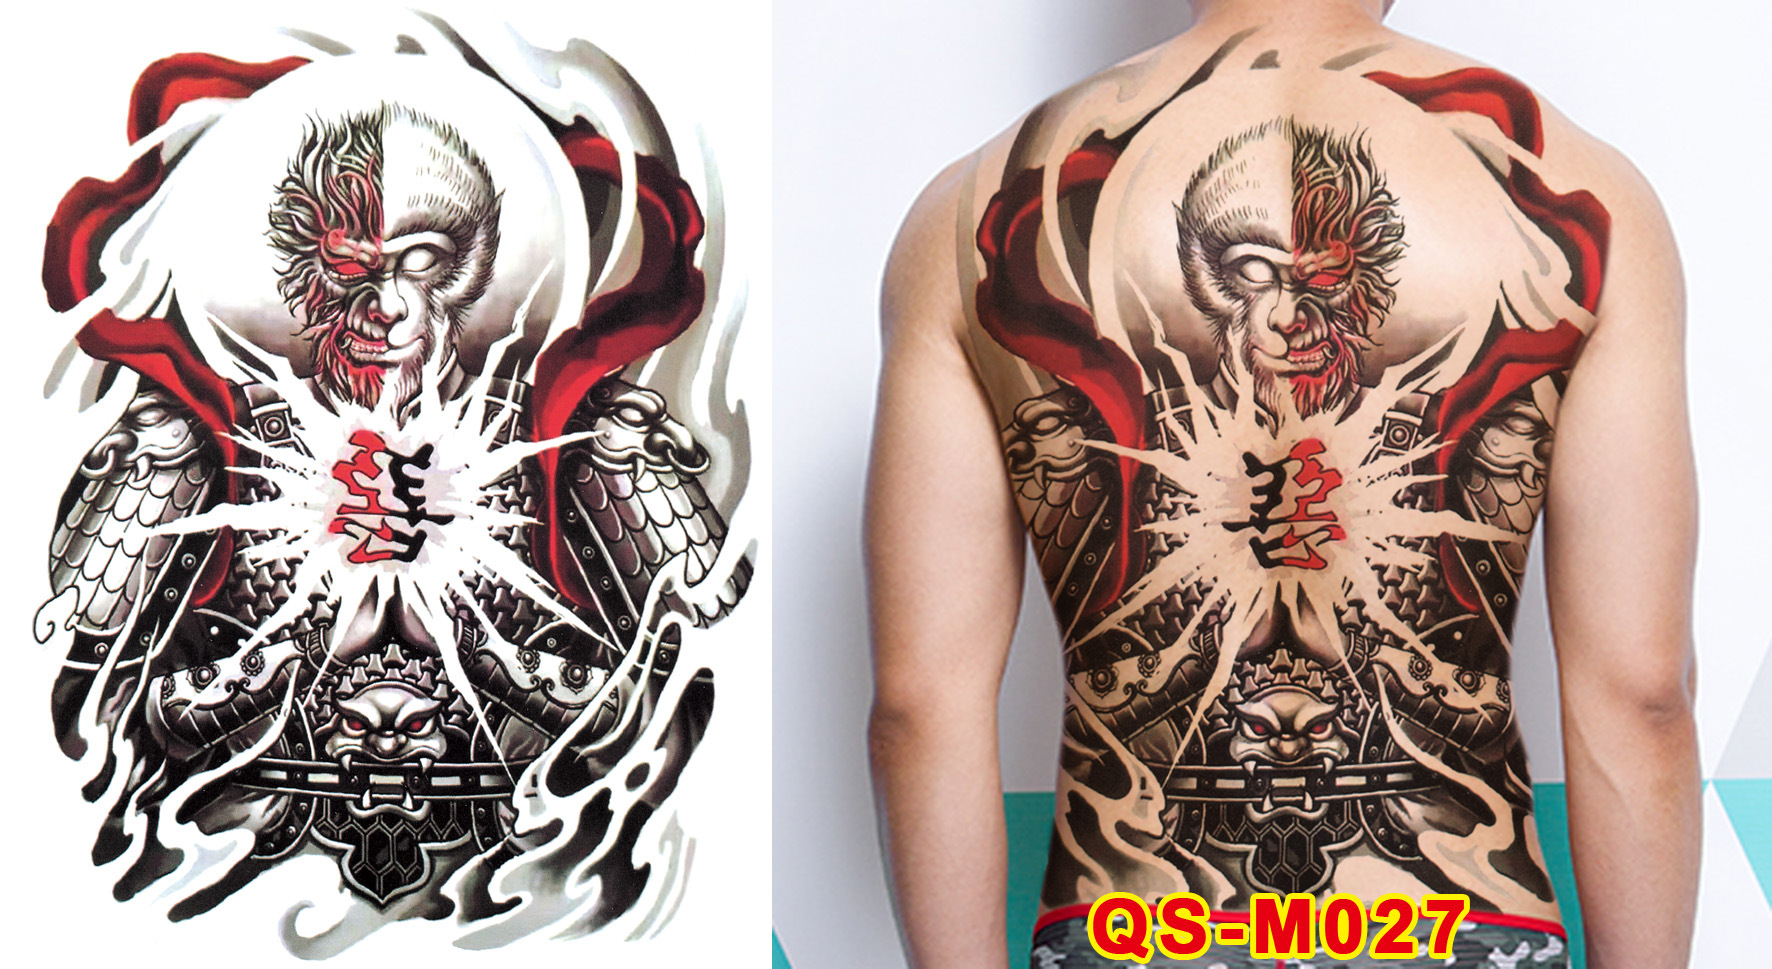 Biến hình xăm mơ ước thành hiện thực | Monster Ink Tattoo